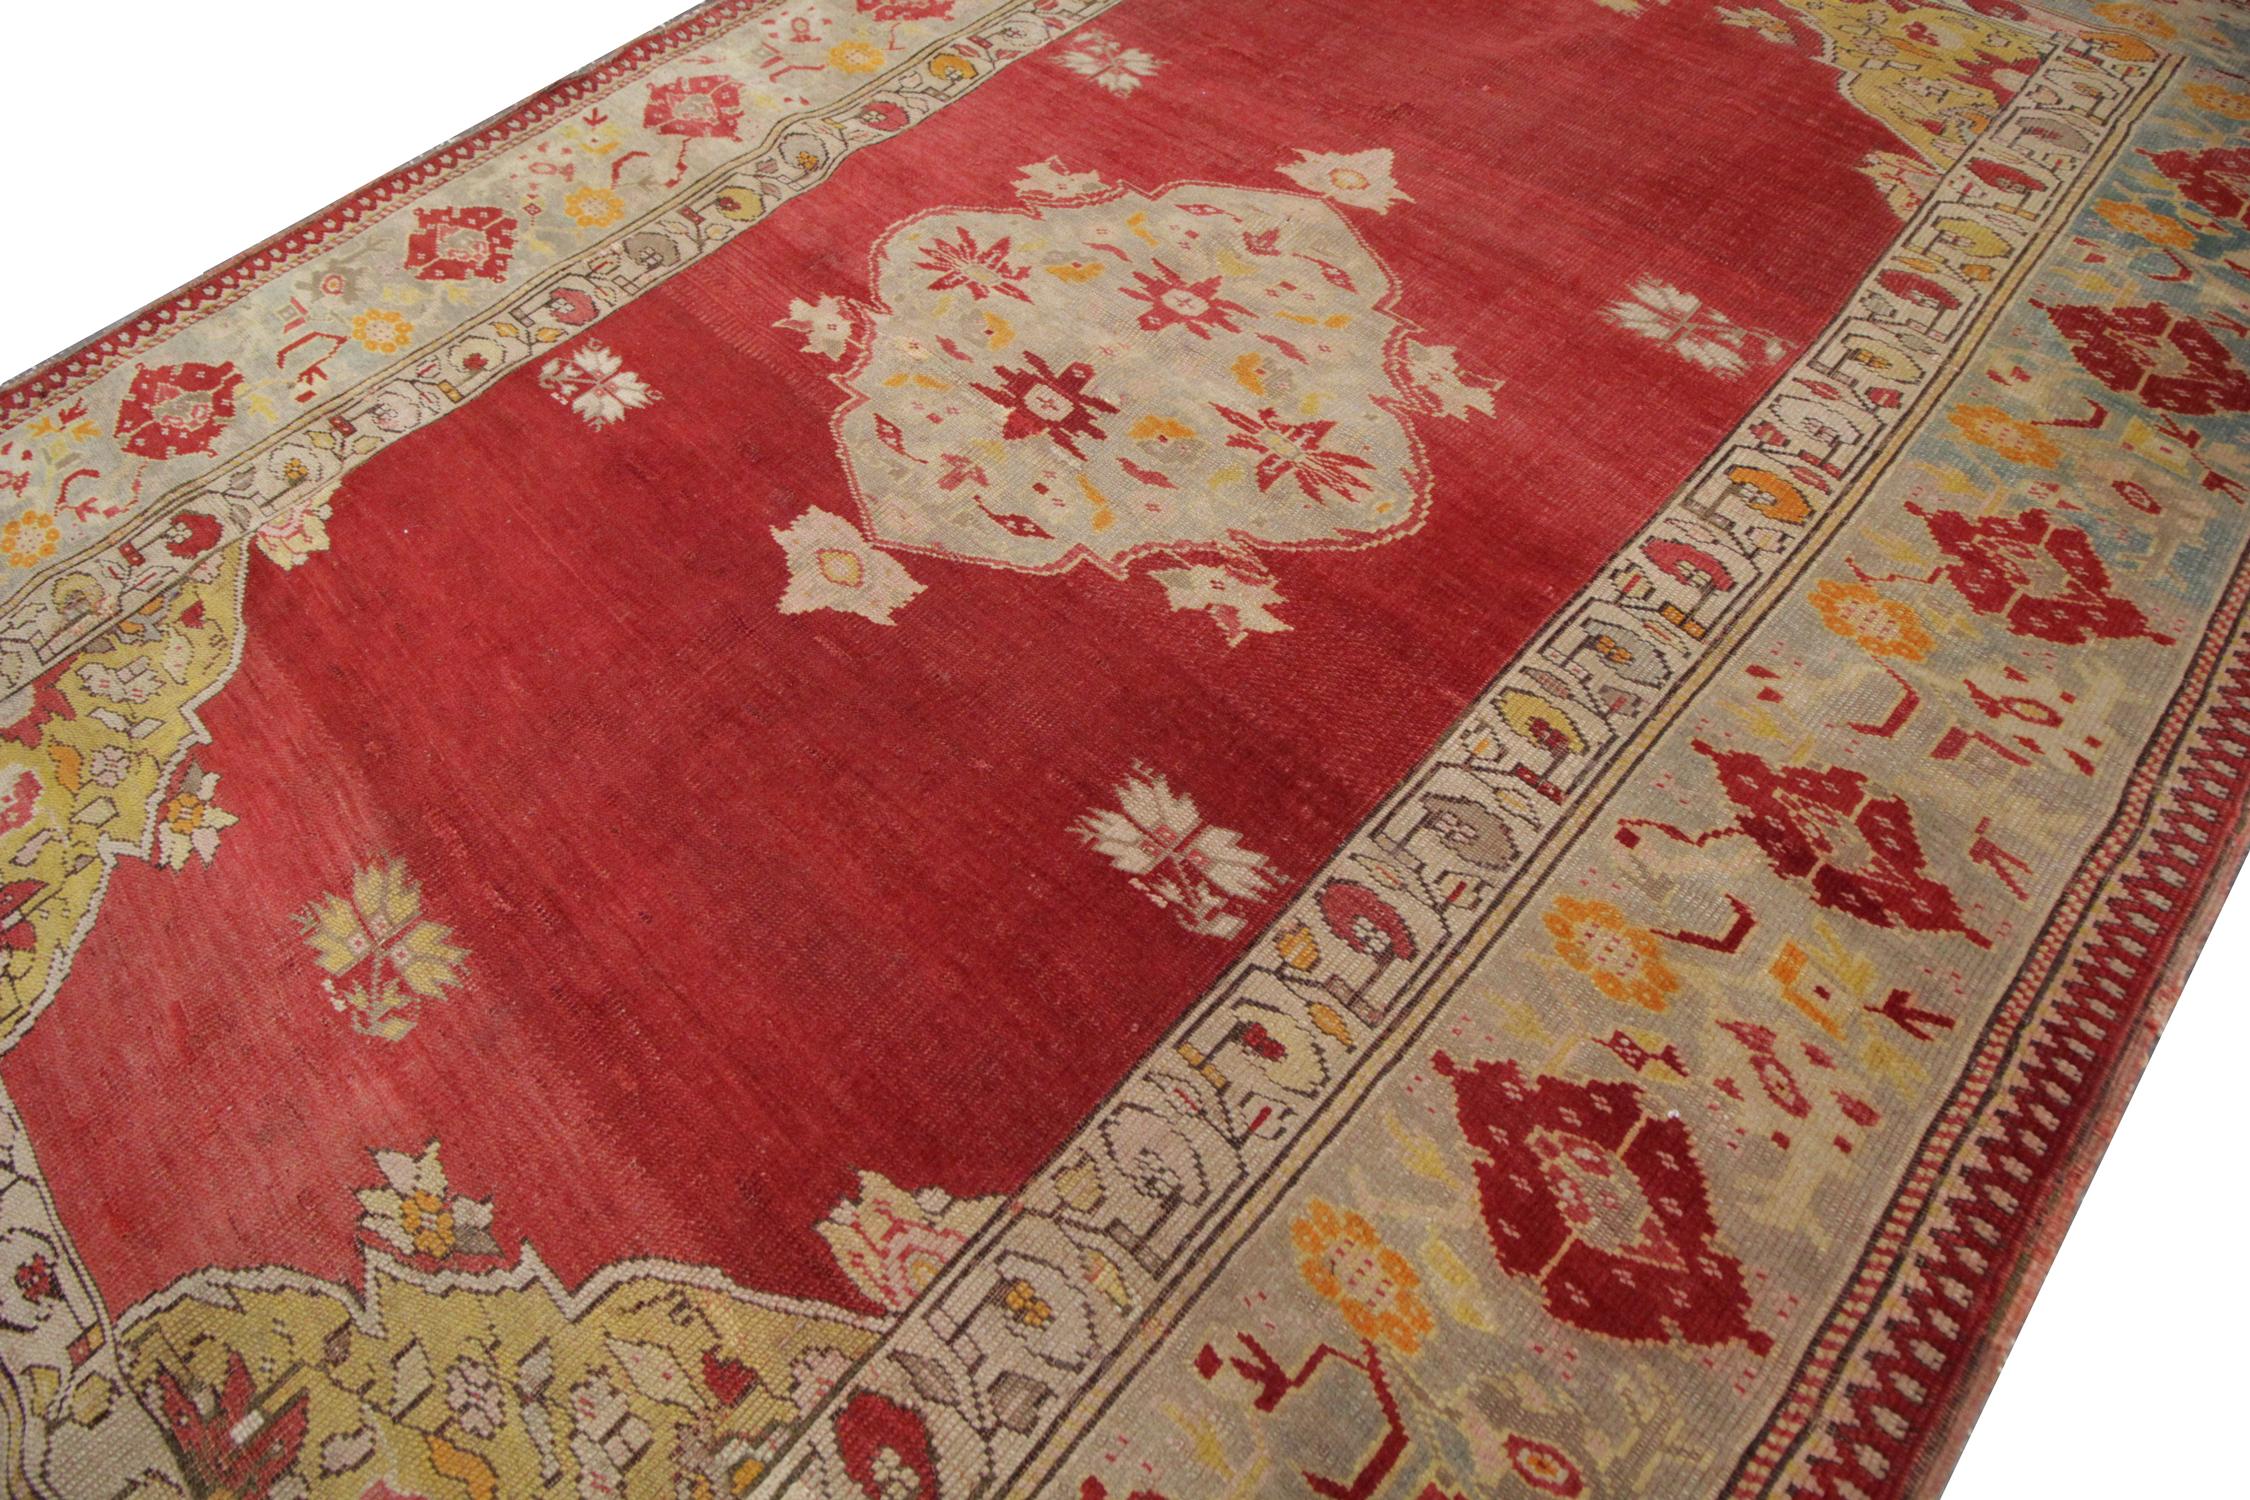 Dieser in der Türkei handgefertigte Borlou-Teppich zeichnet sich durch ein atemberaubendes Medaillonmuster aus, das auf einem sattroten Hintergrund gewebt ist. Das schlichte zentrale Design wird von einer sehr detaillierten Rapportbordüre